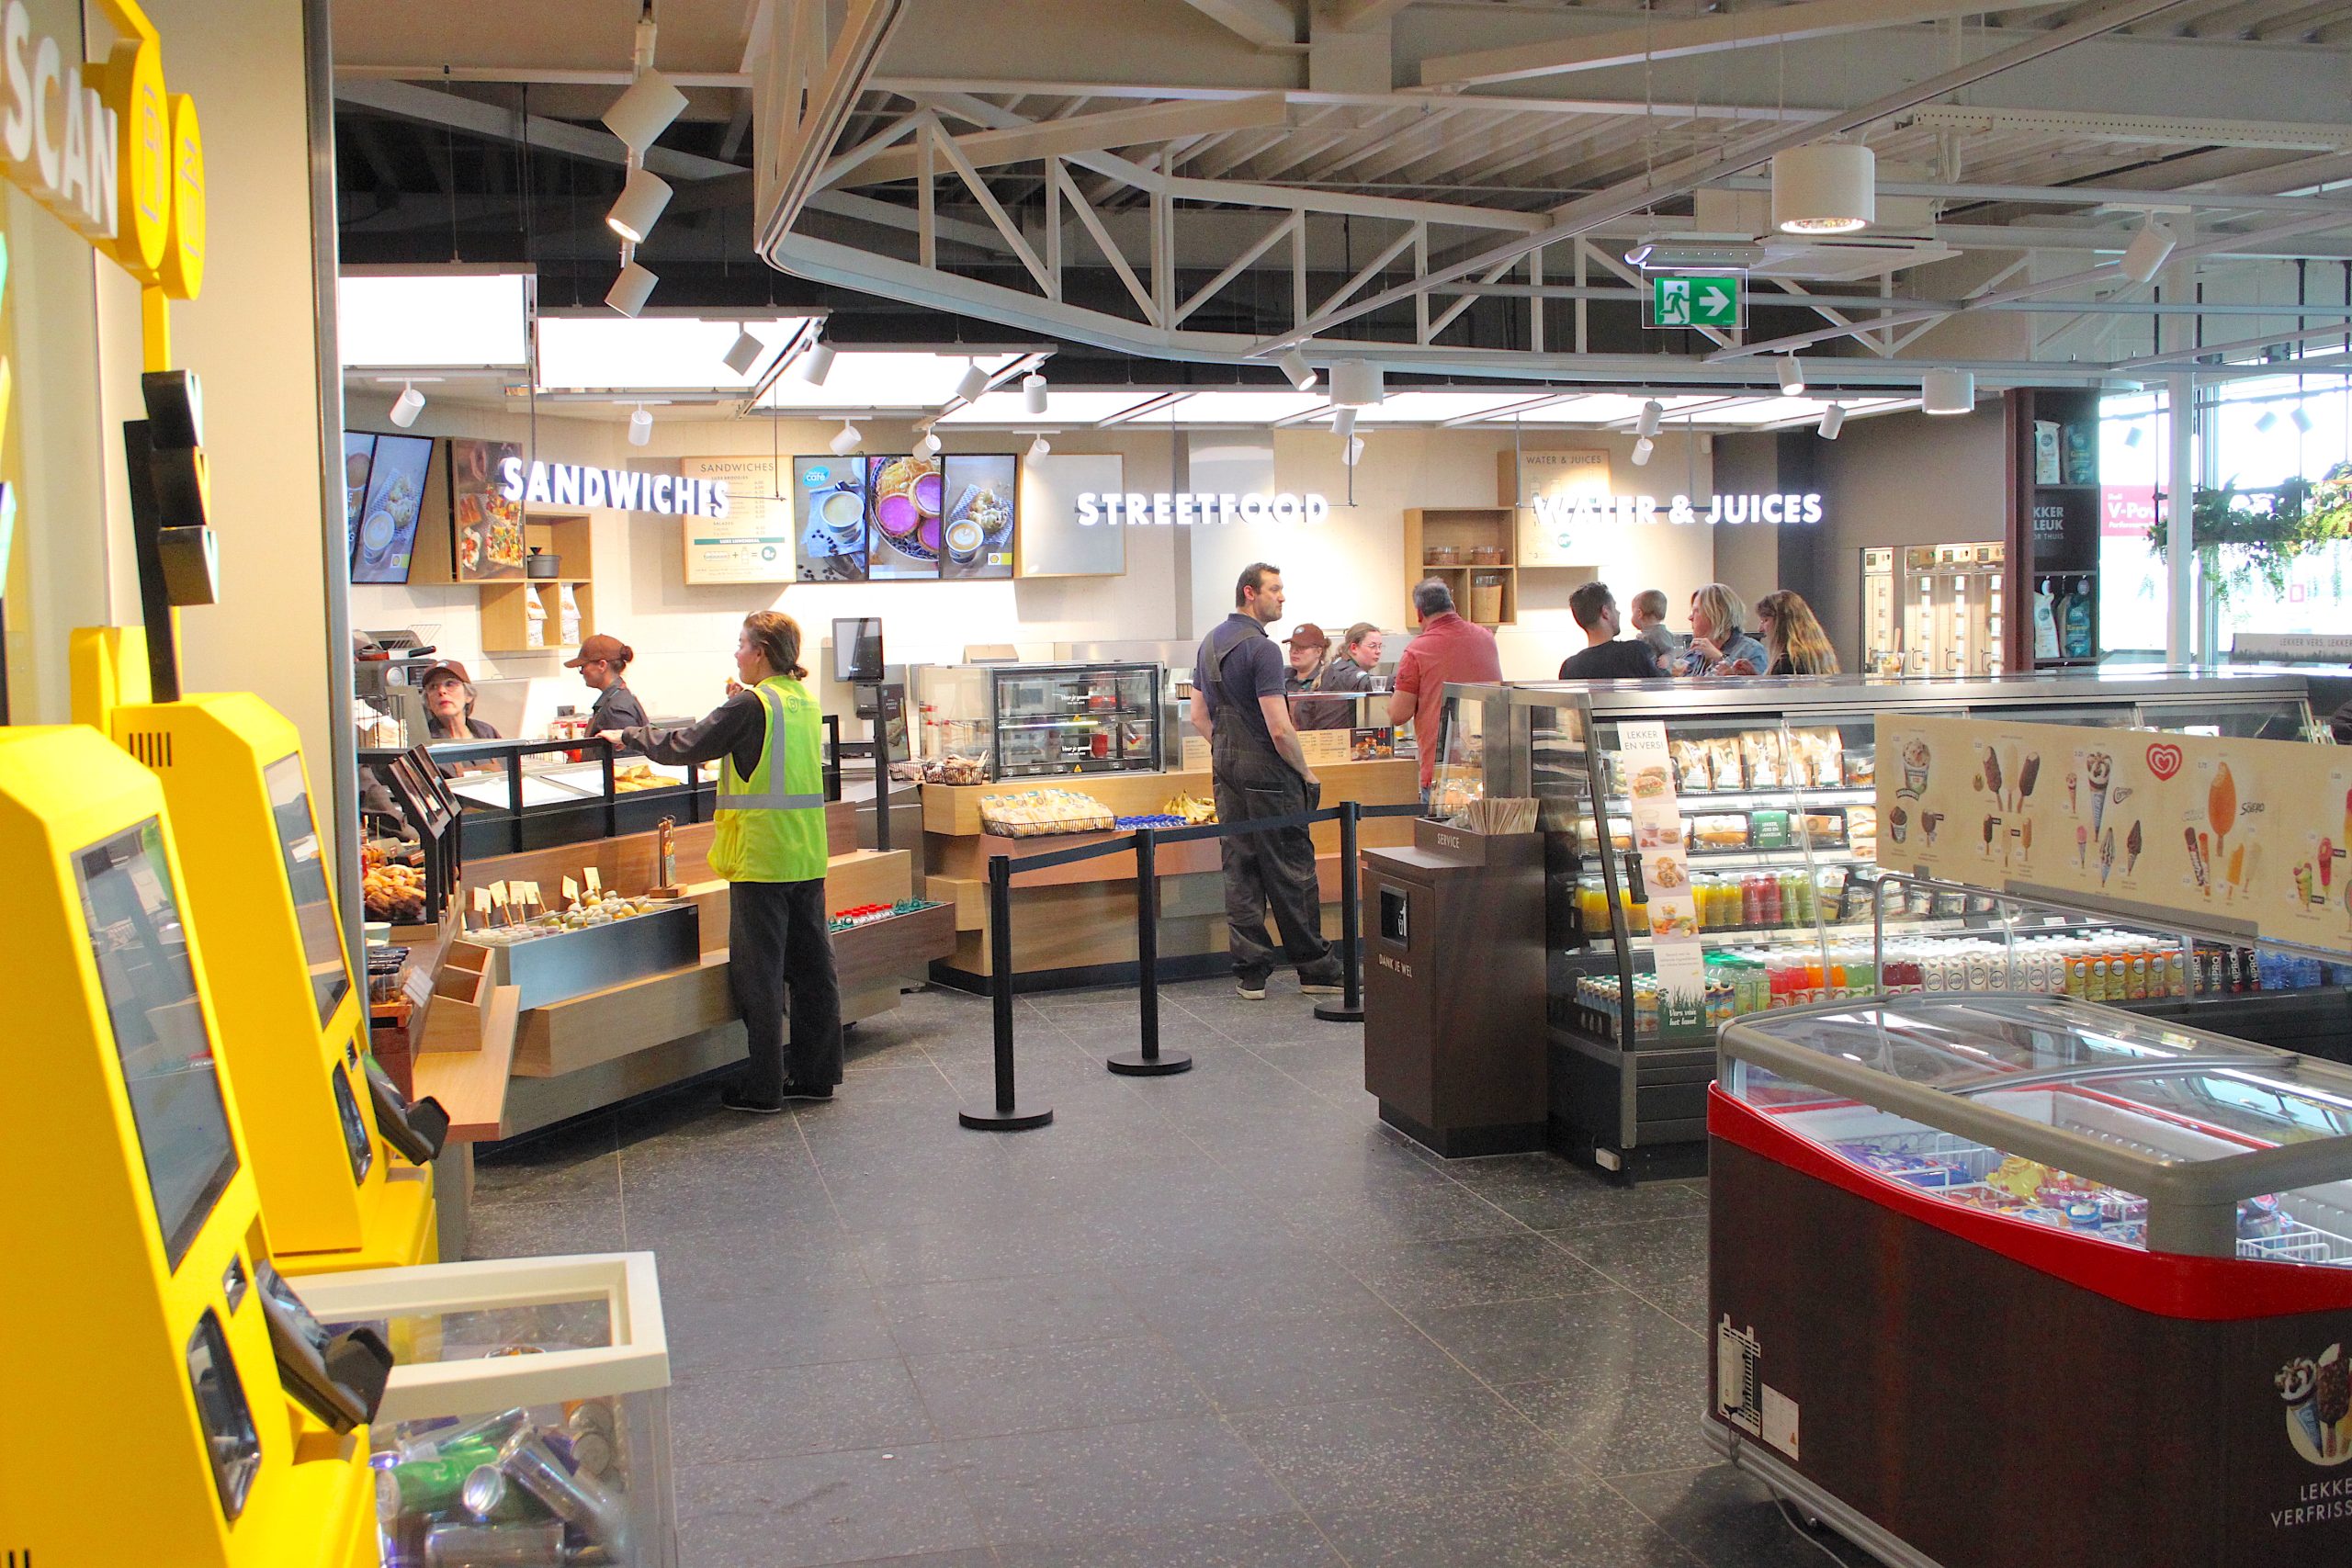 Shell De Lucht-West vernieuwd naar Shell Café met Starbucks Store